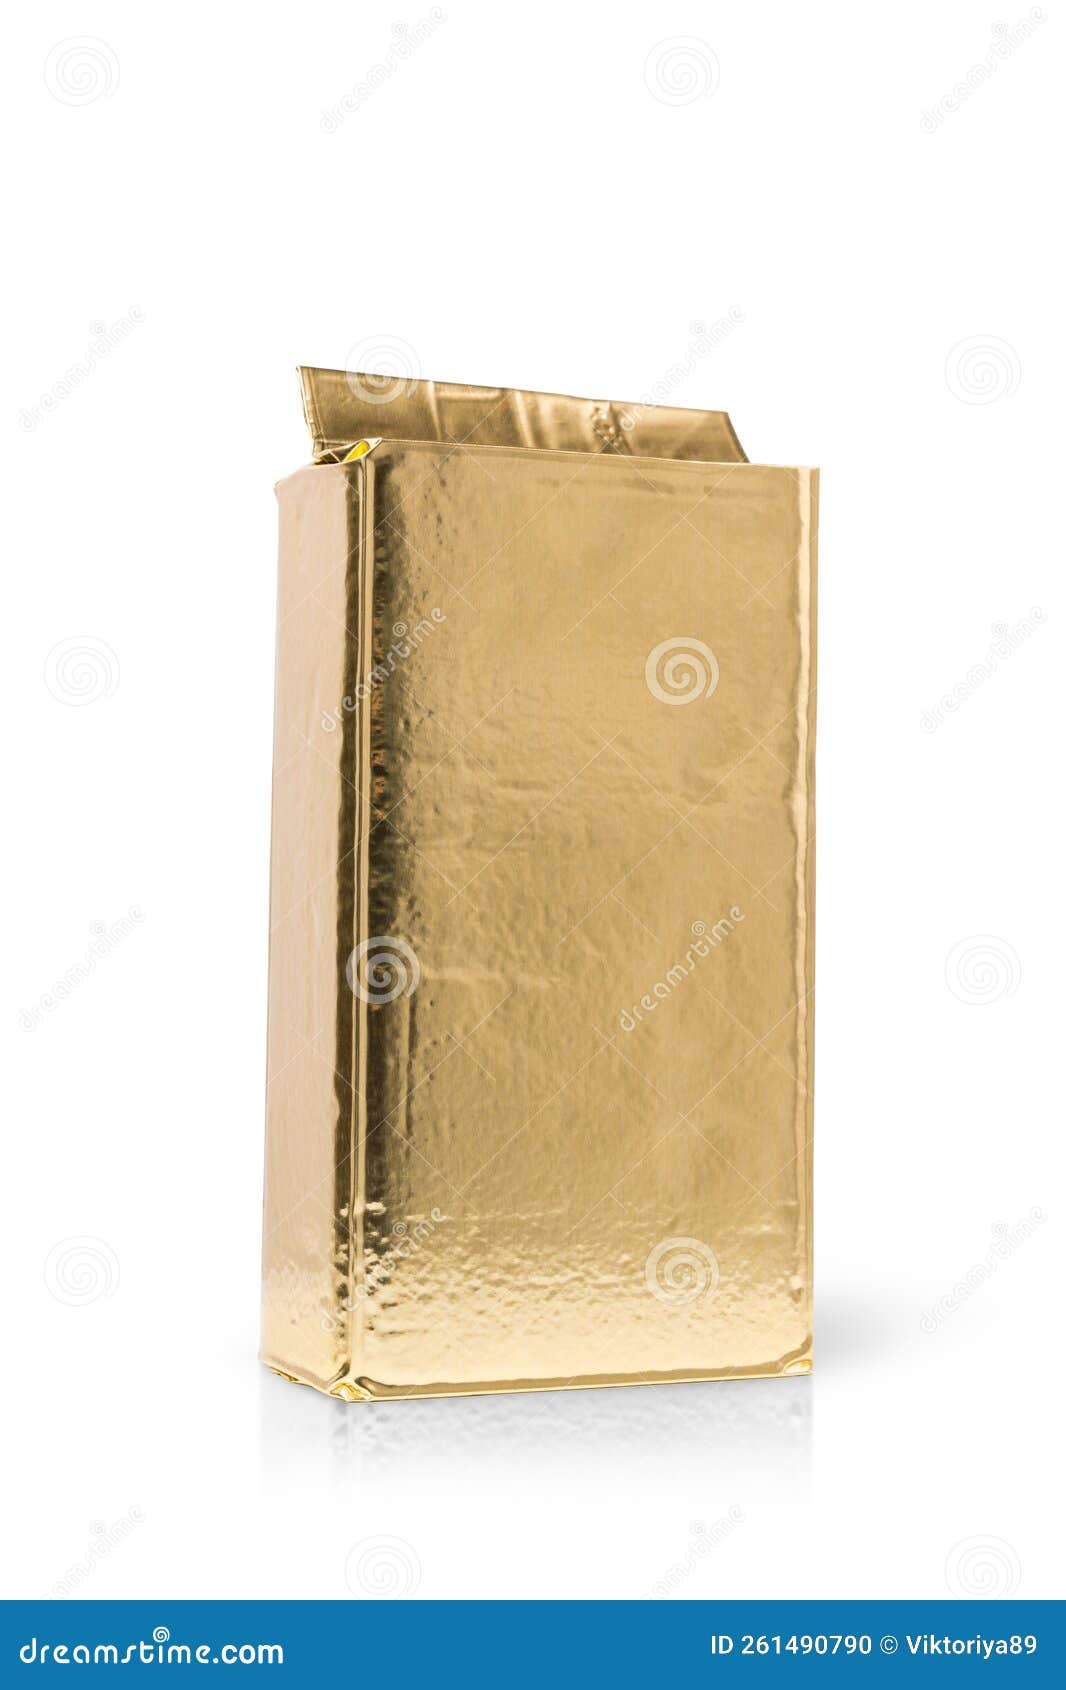 Caja de carton vacia de color oro o dorado liso